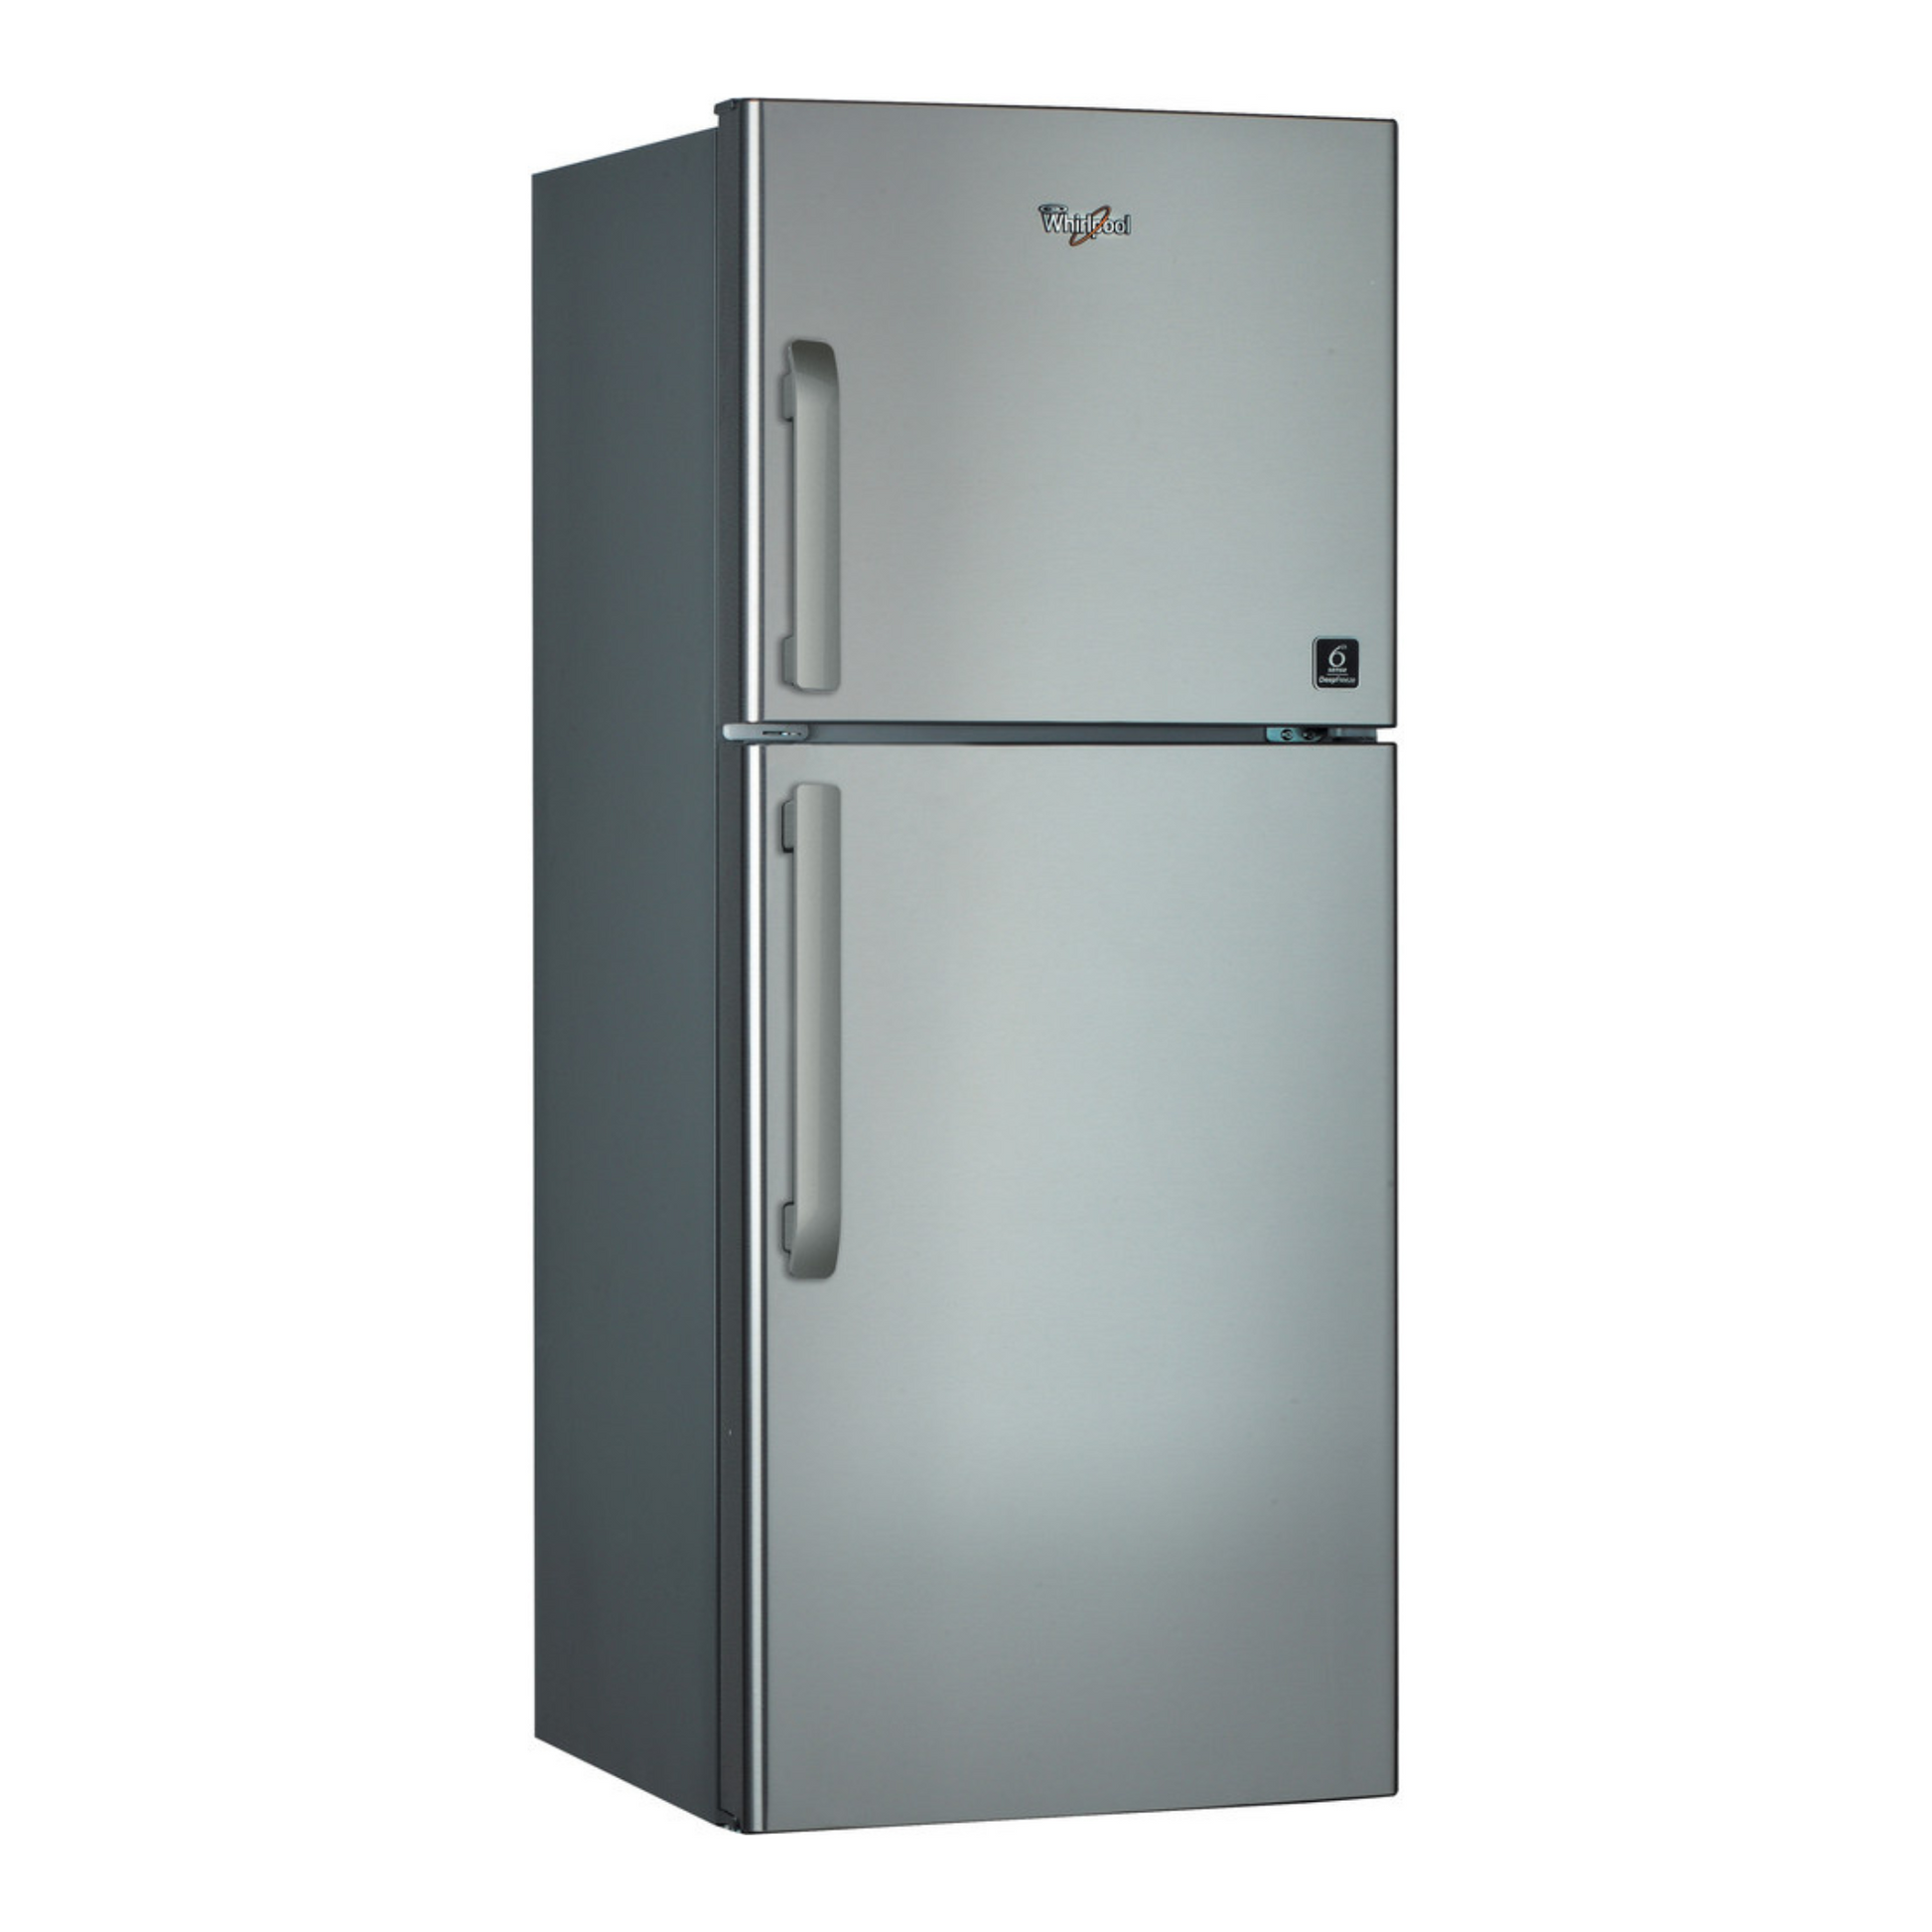 Whirlpool 302L Refrigerator, WTM302RSL